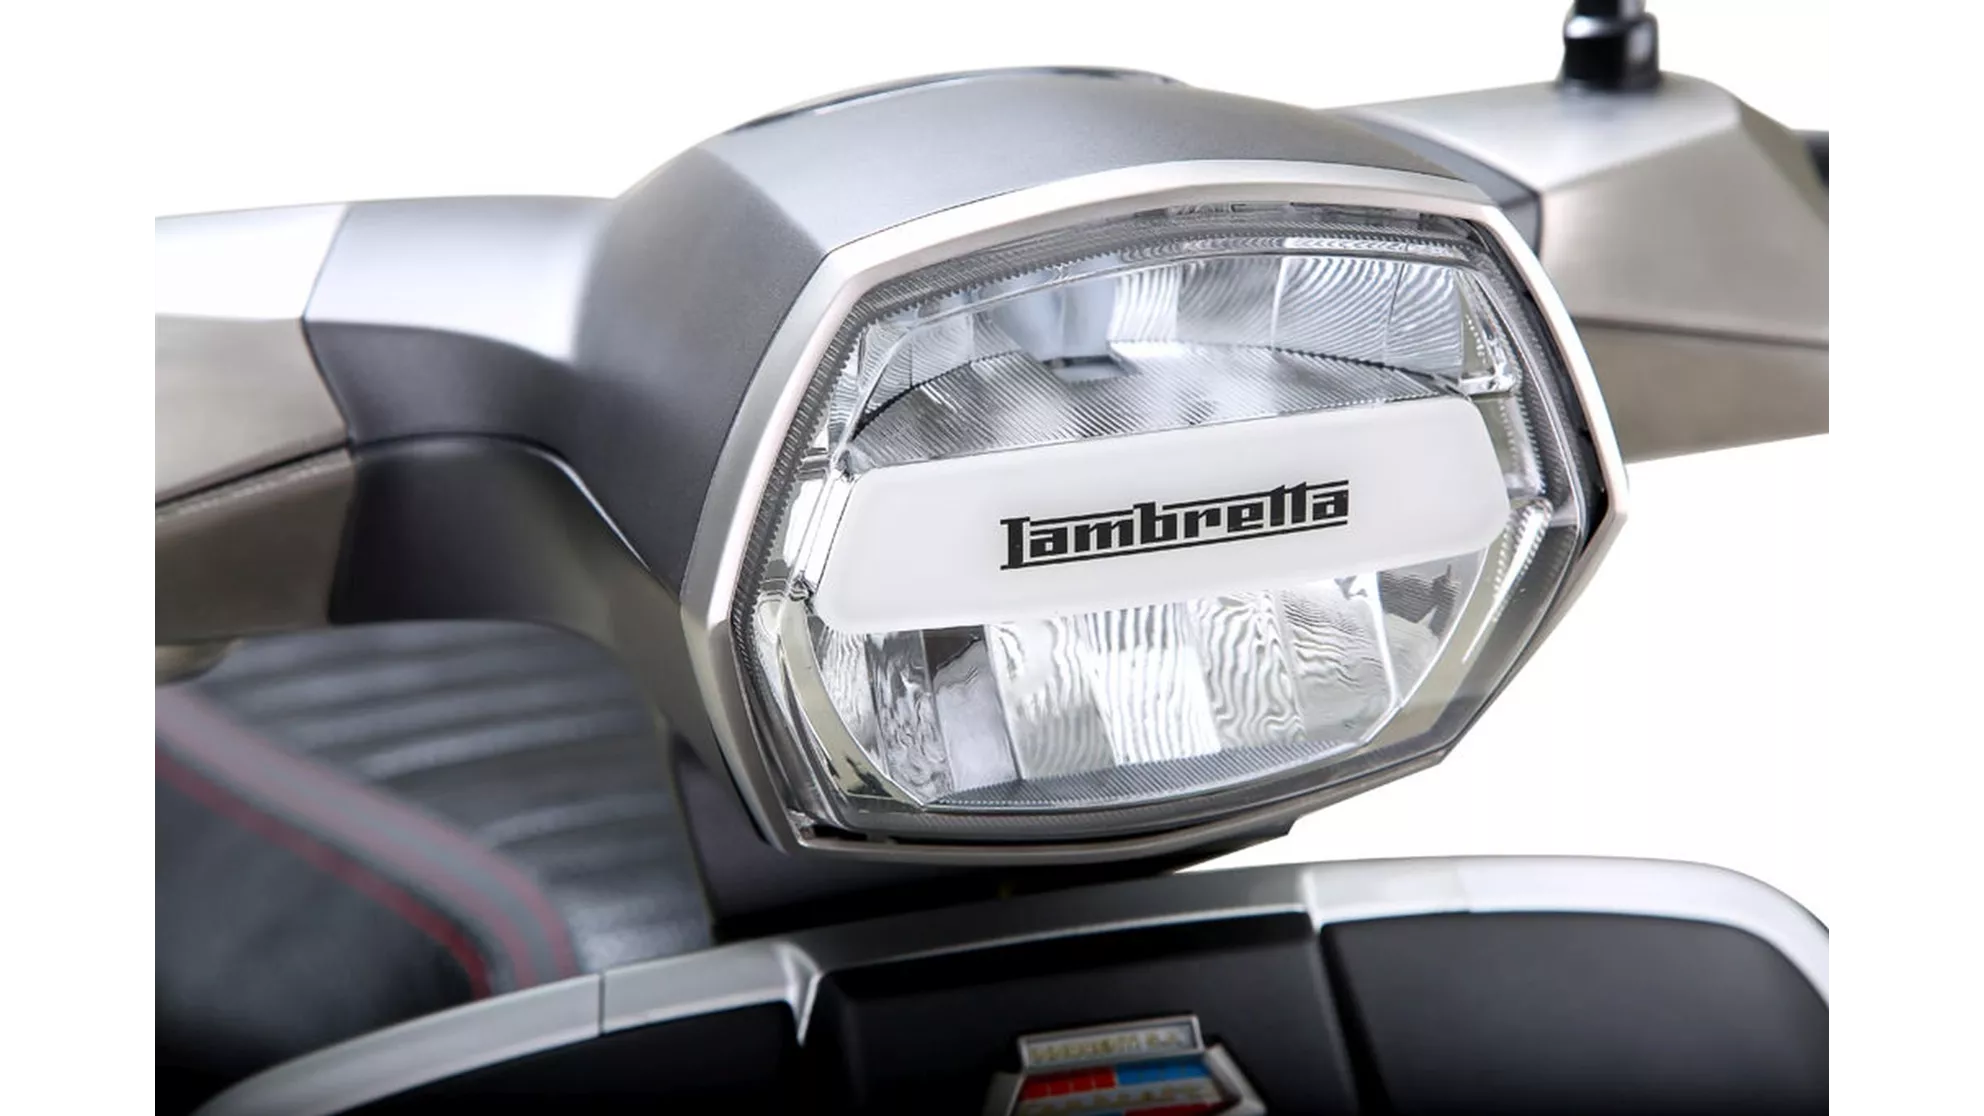 Lambretta V125 Special Pirelli Edition - Image 14